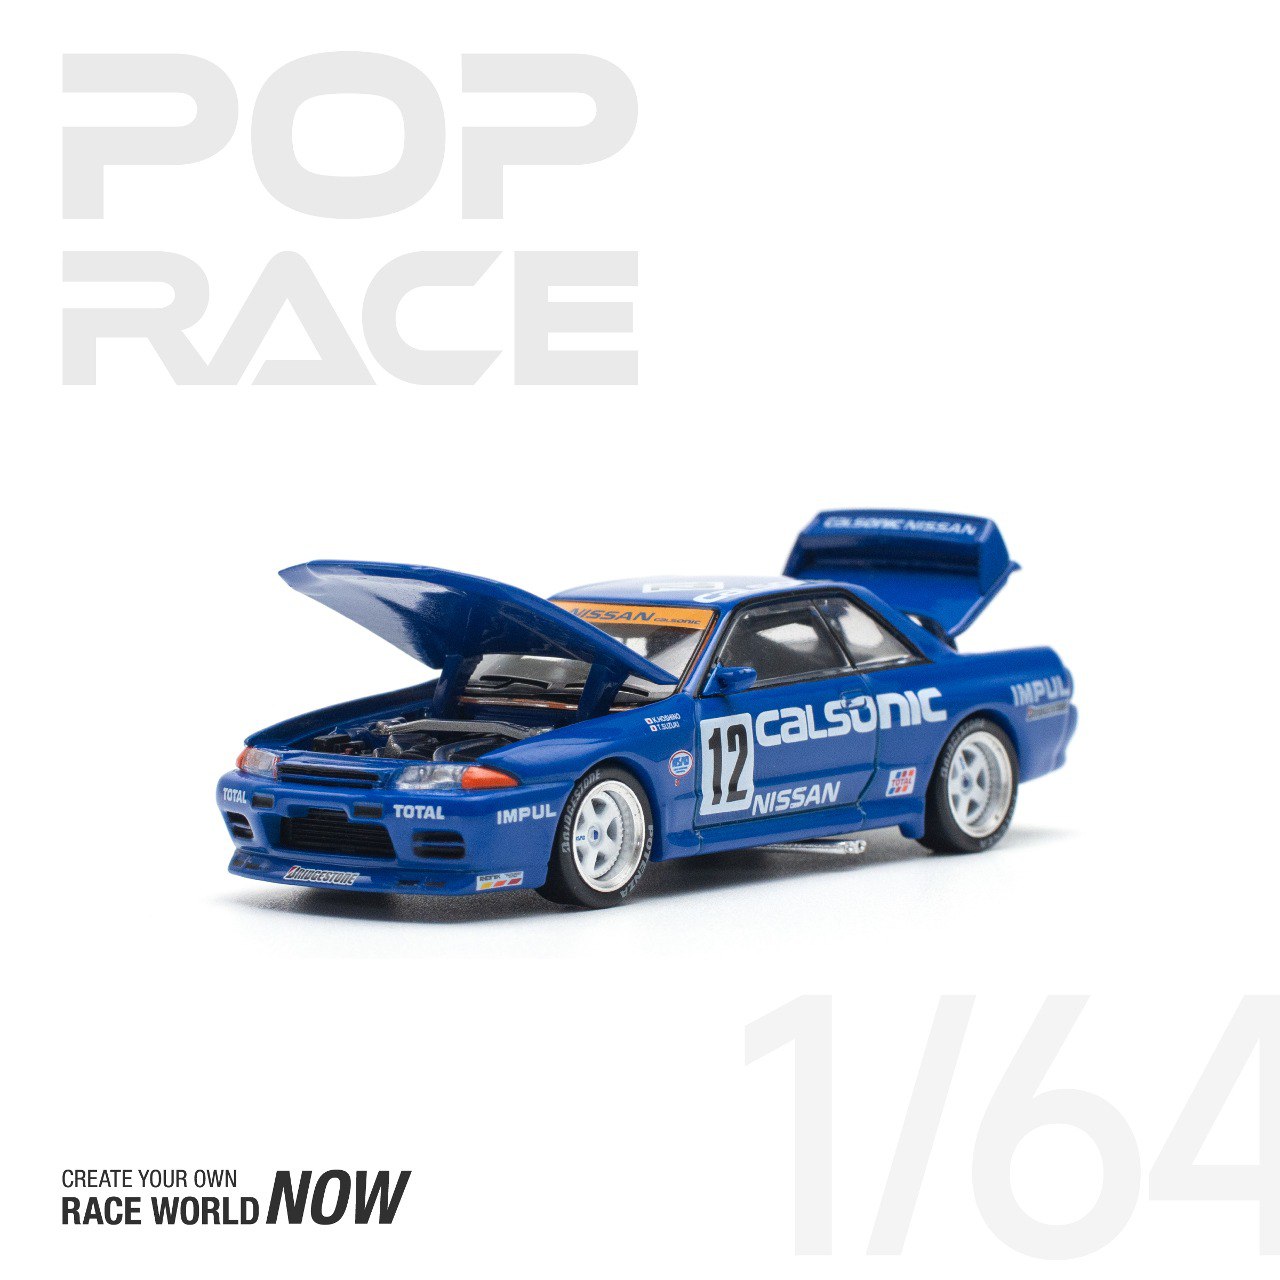 [Pop Race] NISSAN SKYLINE GT-R R32 JTC 1990 CALSONIC #12